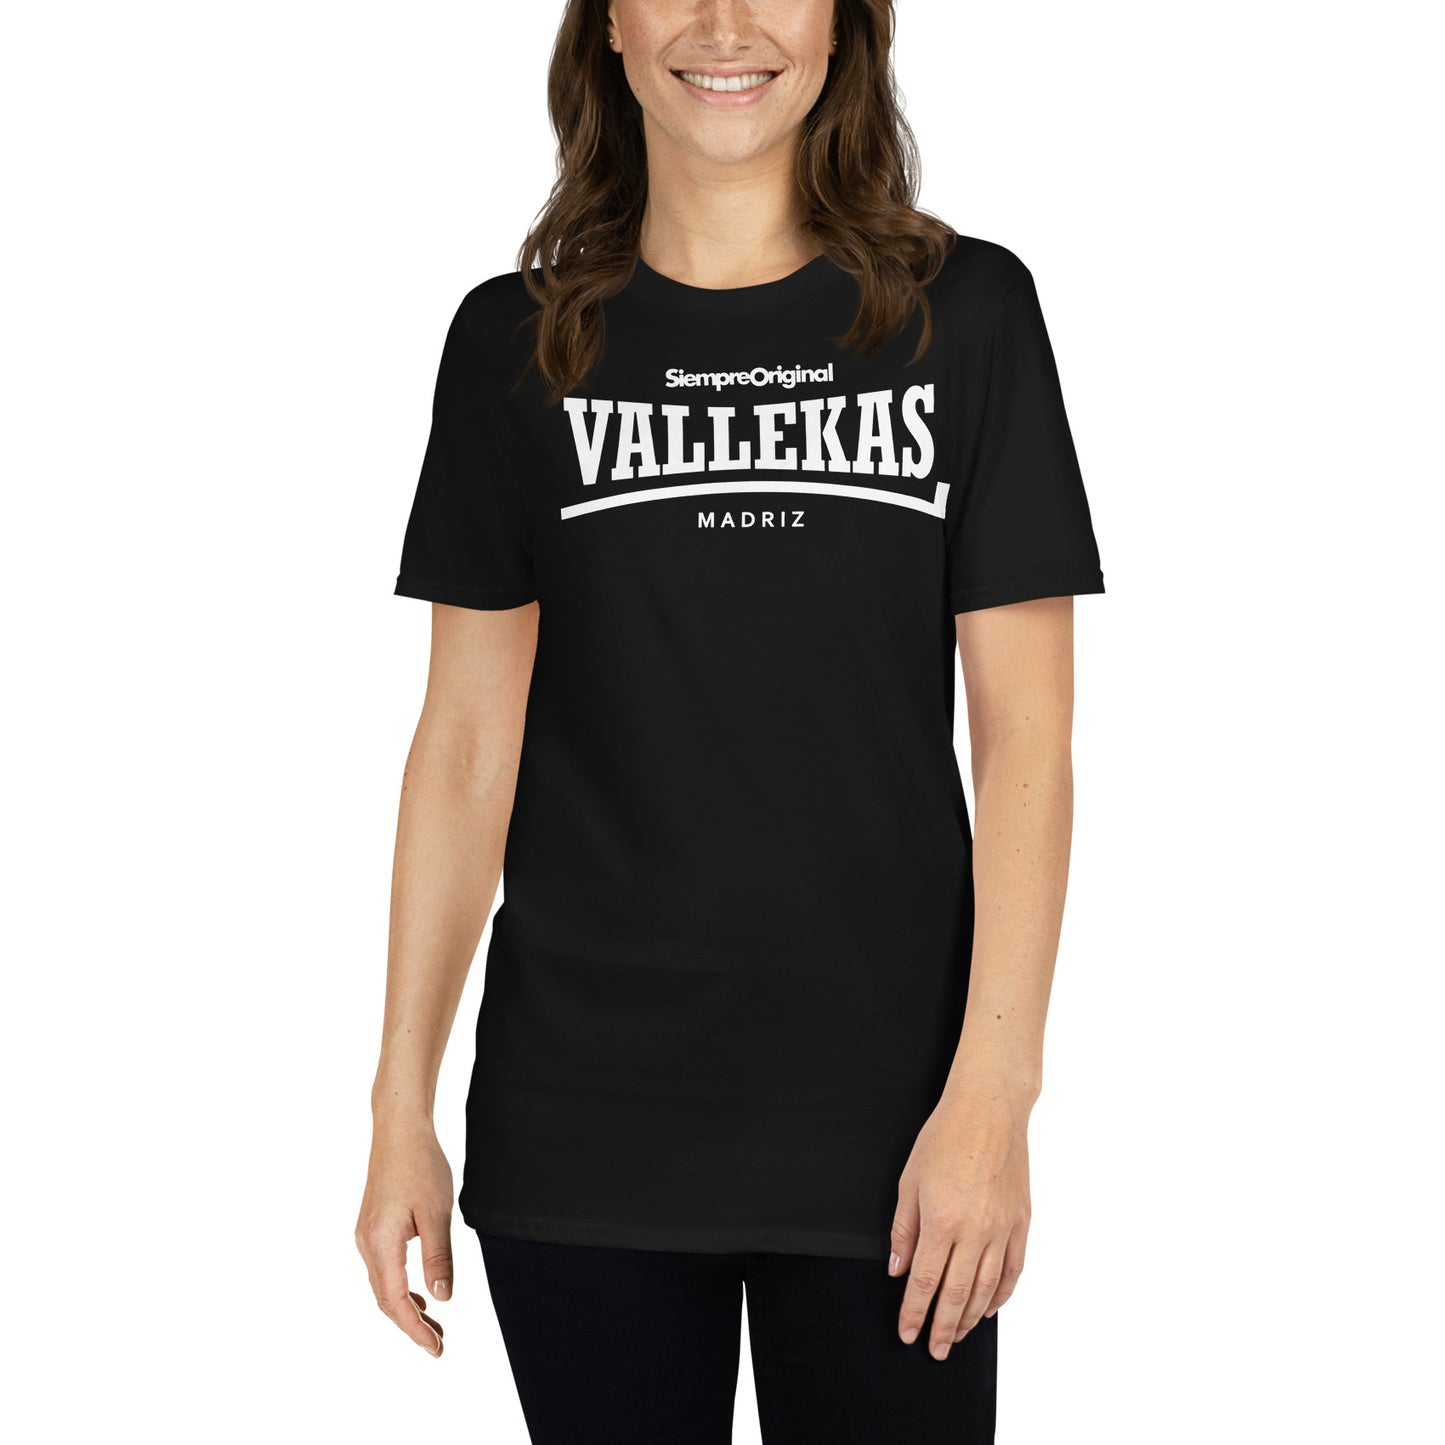 Camiseta del barrio de Vallecas - Madrid. Color Negro.